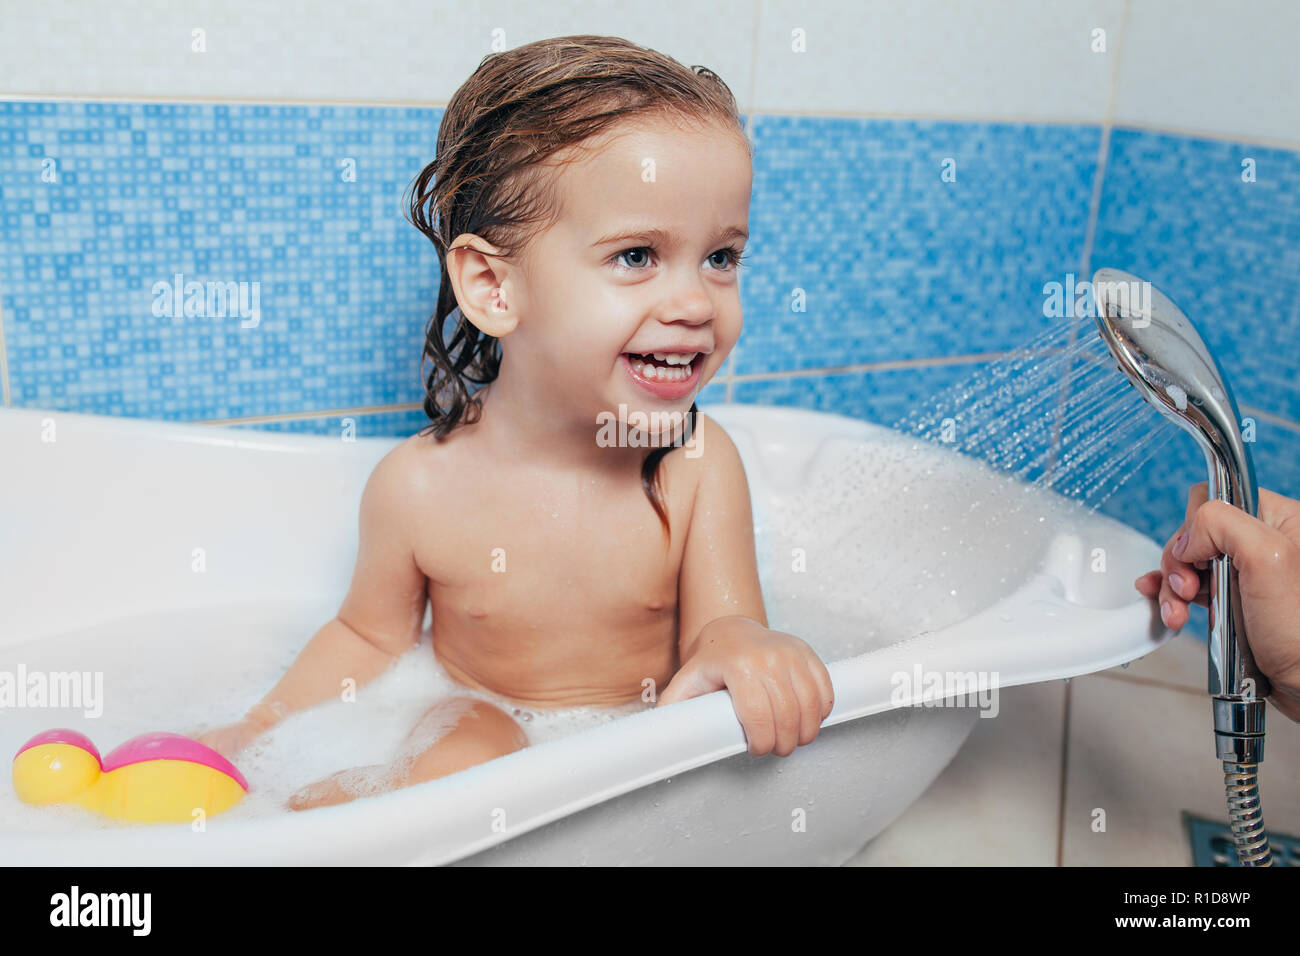 Schönes kleines Mädchen in der Badewanne zu Hause. Ein niedliches Baby  sitzt im Bad und mit Spielzeug spielen und Wasser. Persönliche Hygiene für  Kinder. Da Stockfotografie - Alamy